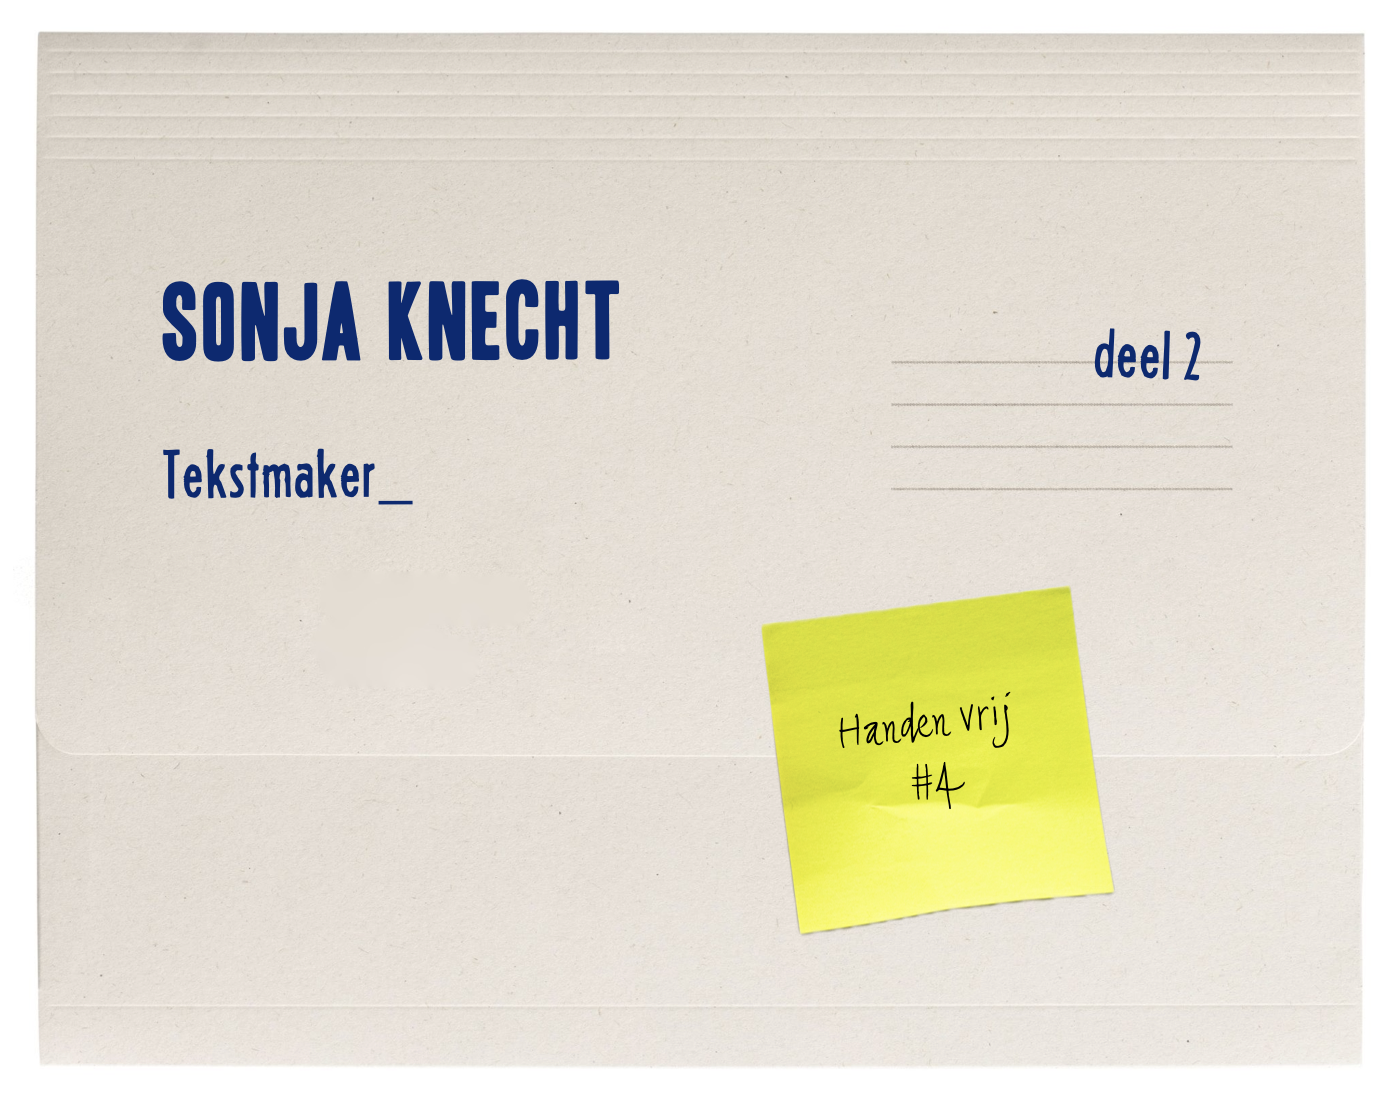 Handen vrij – Sonja Knecht, tekstmaker (2)